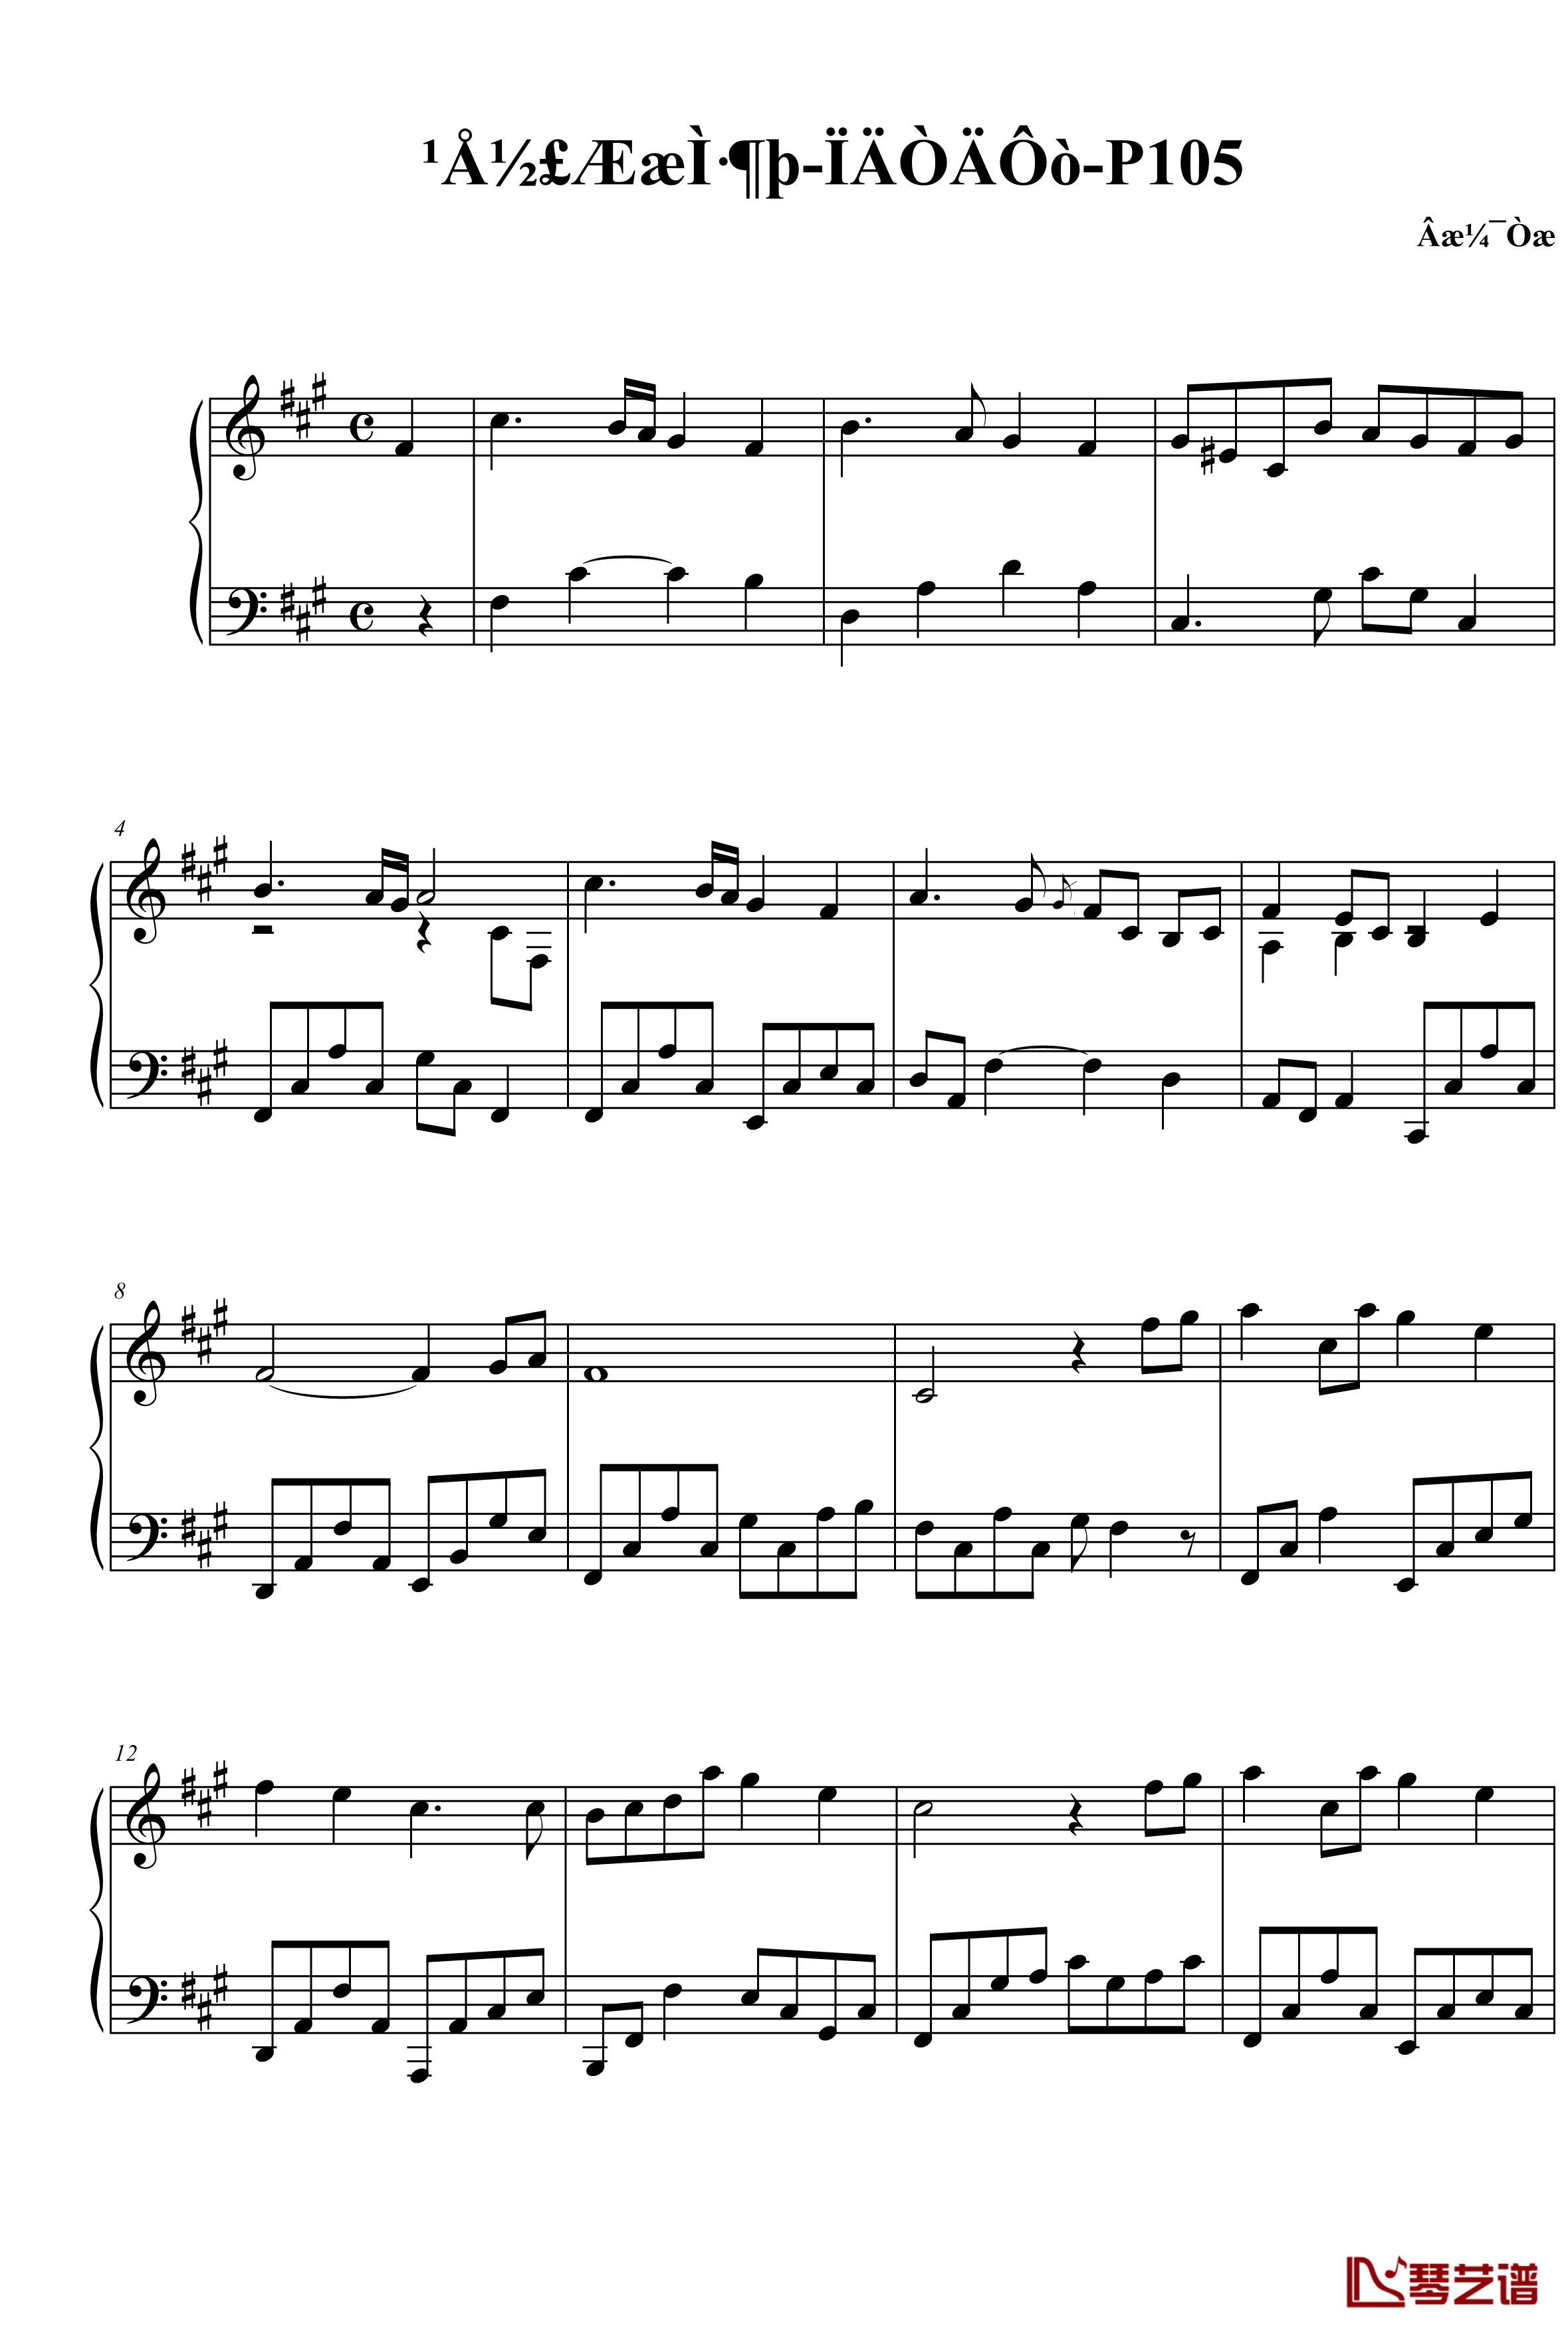 夏夷则主题曲钢琴谱-古剑奇谭二-P1051